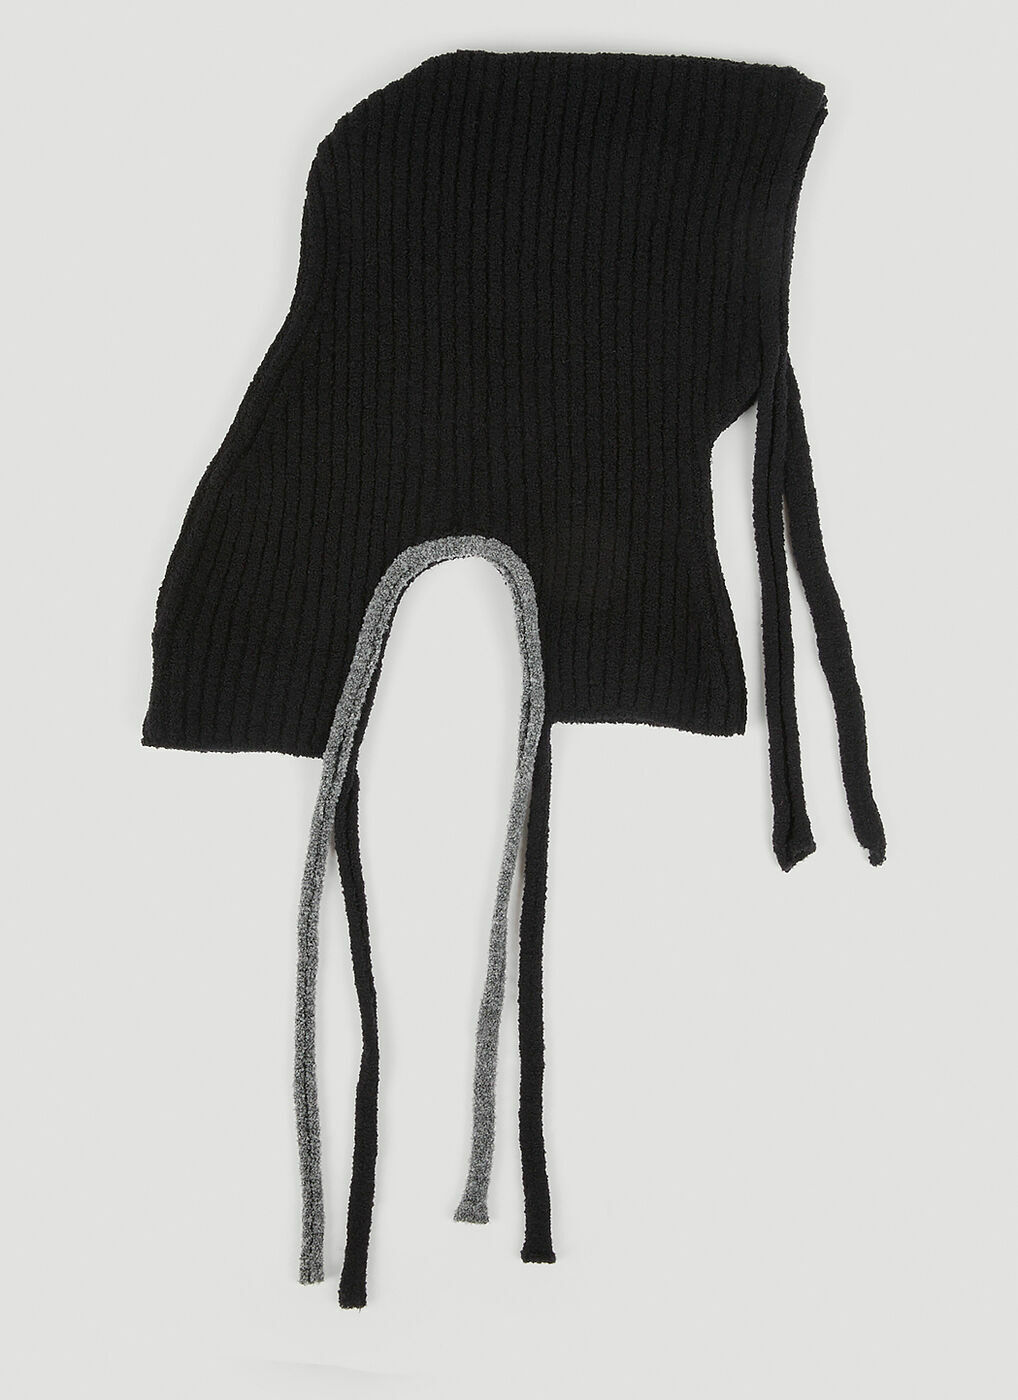 Knit Hood in Black Ottolinger